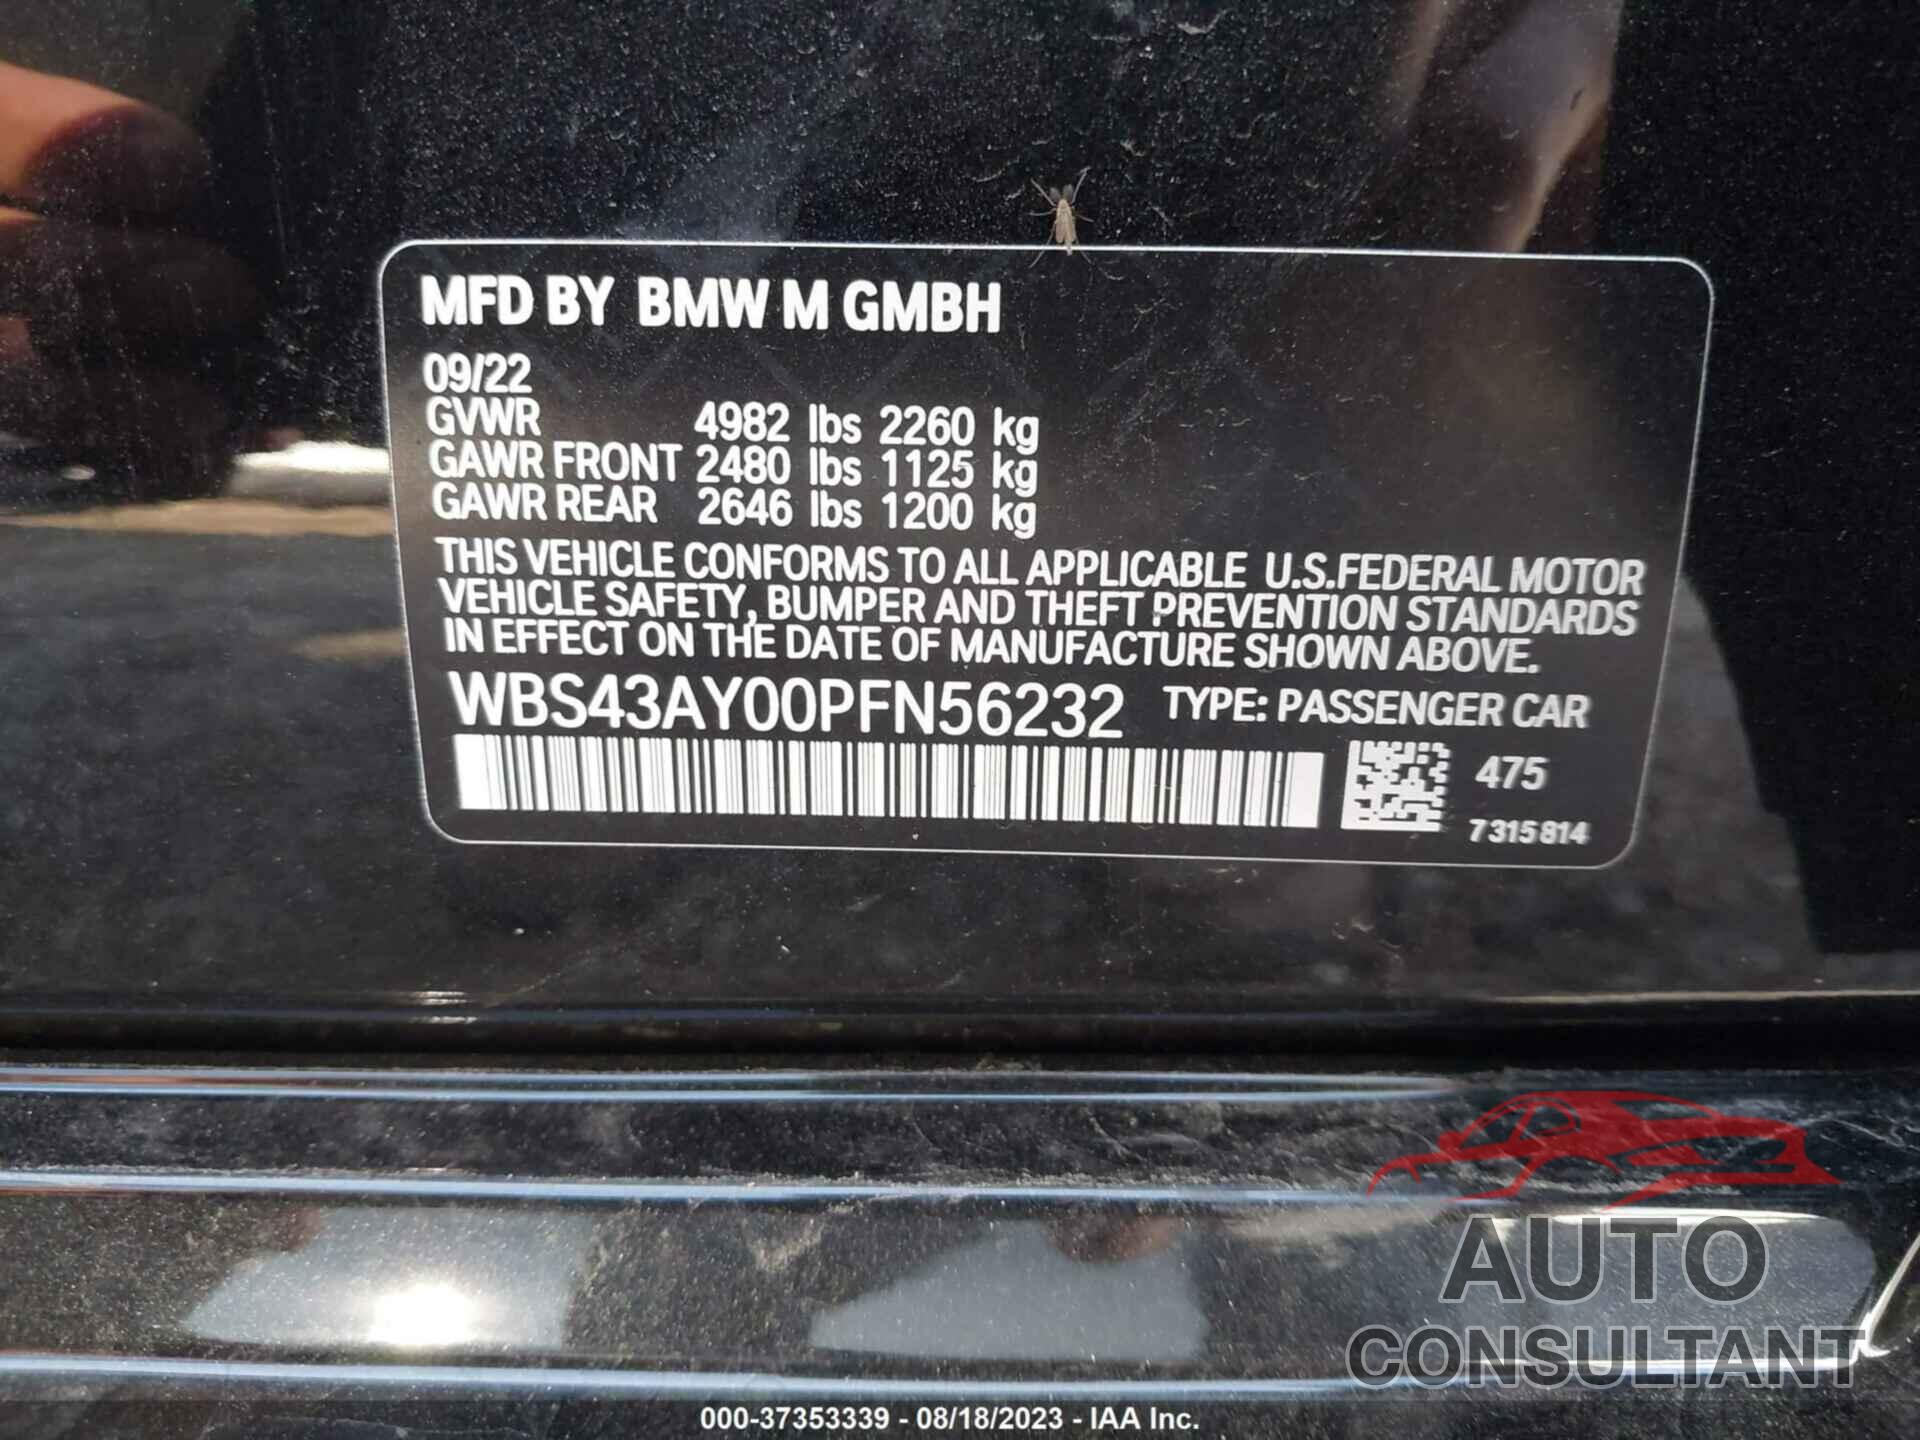 BMW M3 2023 - WBS43AY00PFN56232